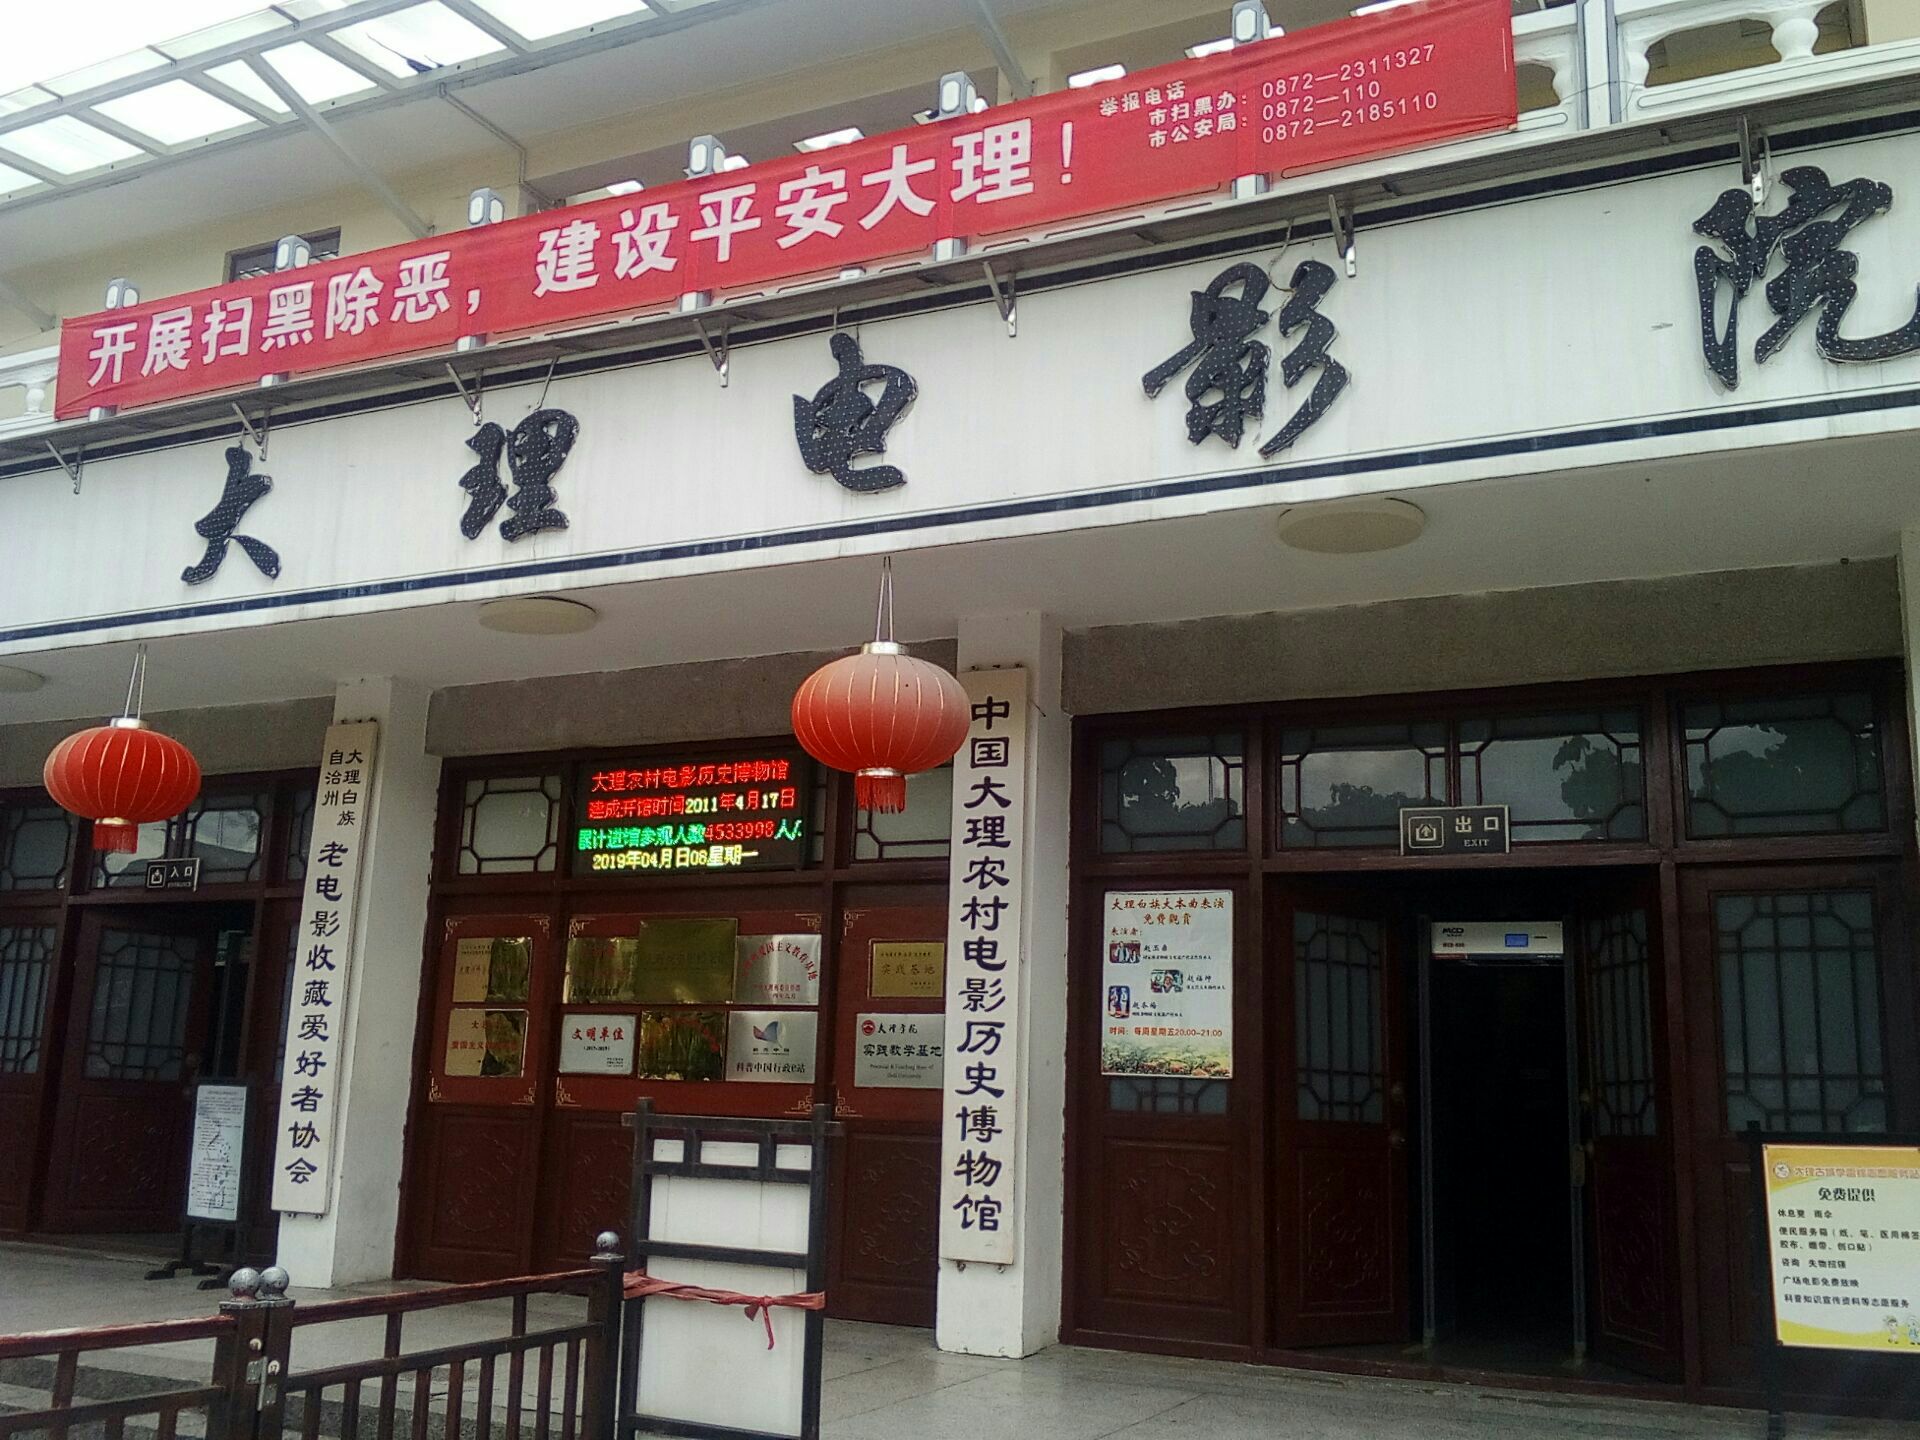 中国农村电影历史博物馆图片